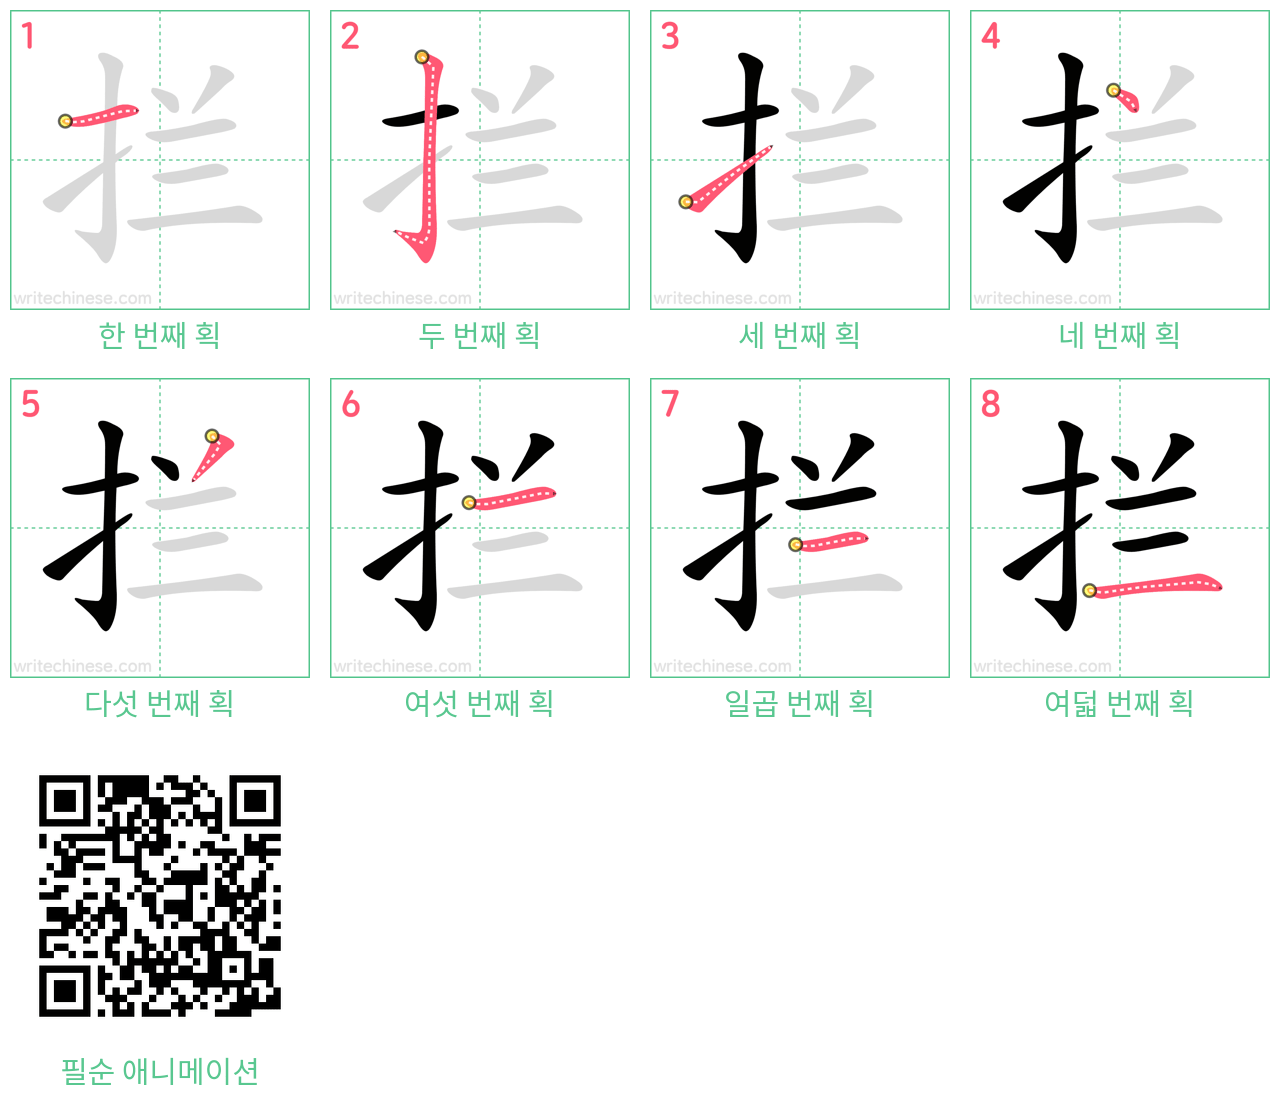 拦 step-by-step stroke order diagrams